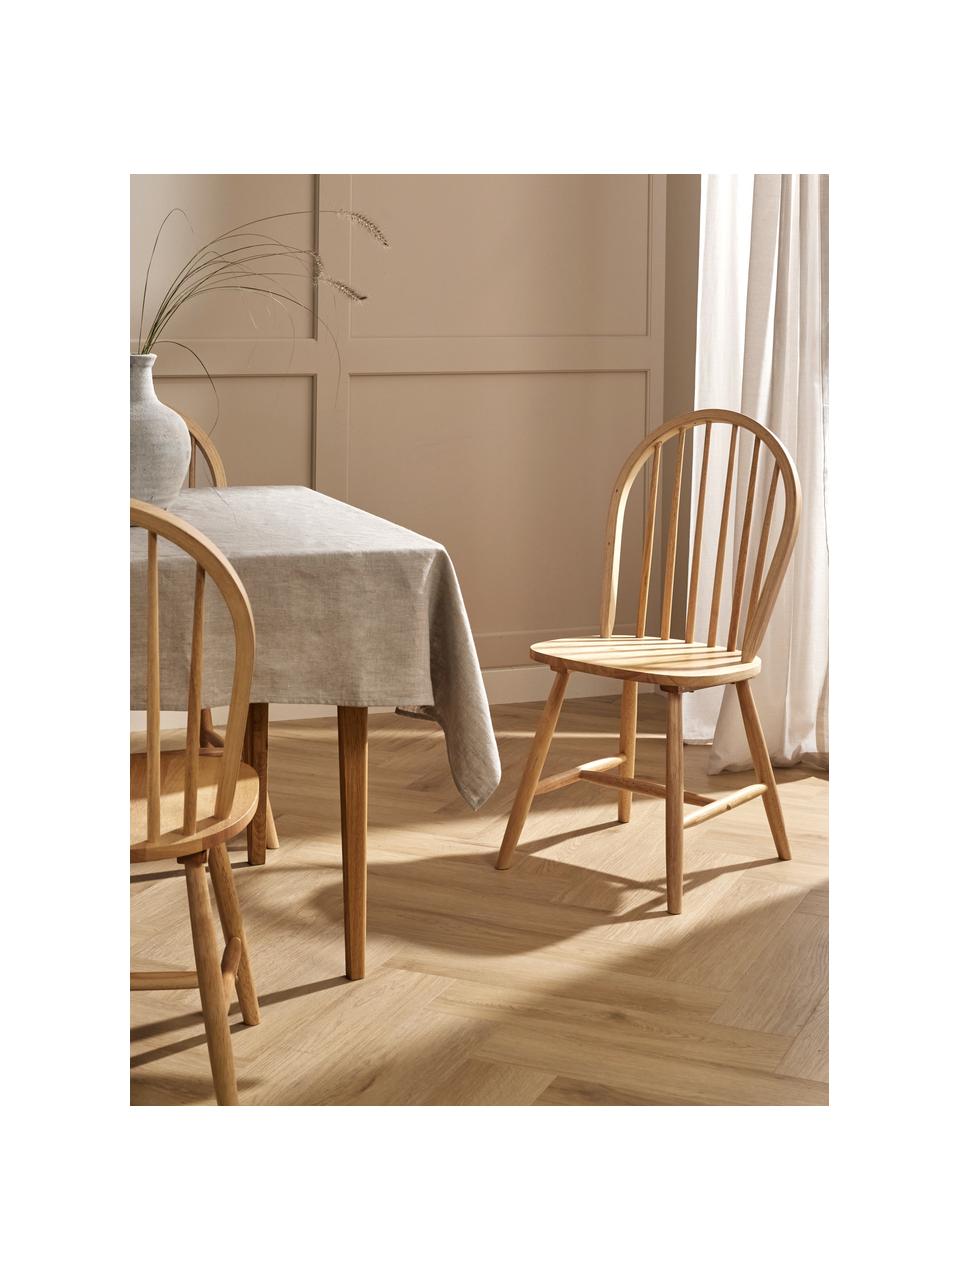 Krzesło z drewna w stylu windsor Megan, 2 szt., Drewno kauczukowe lakierowane, Drewno kauczukowe,  brązowy lakierowany, S 46 x G 51 cm